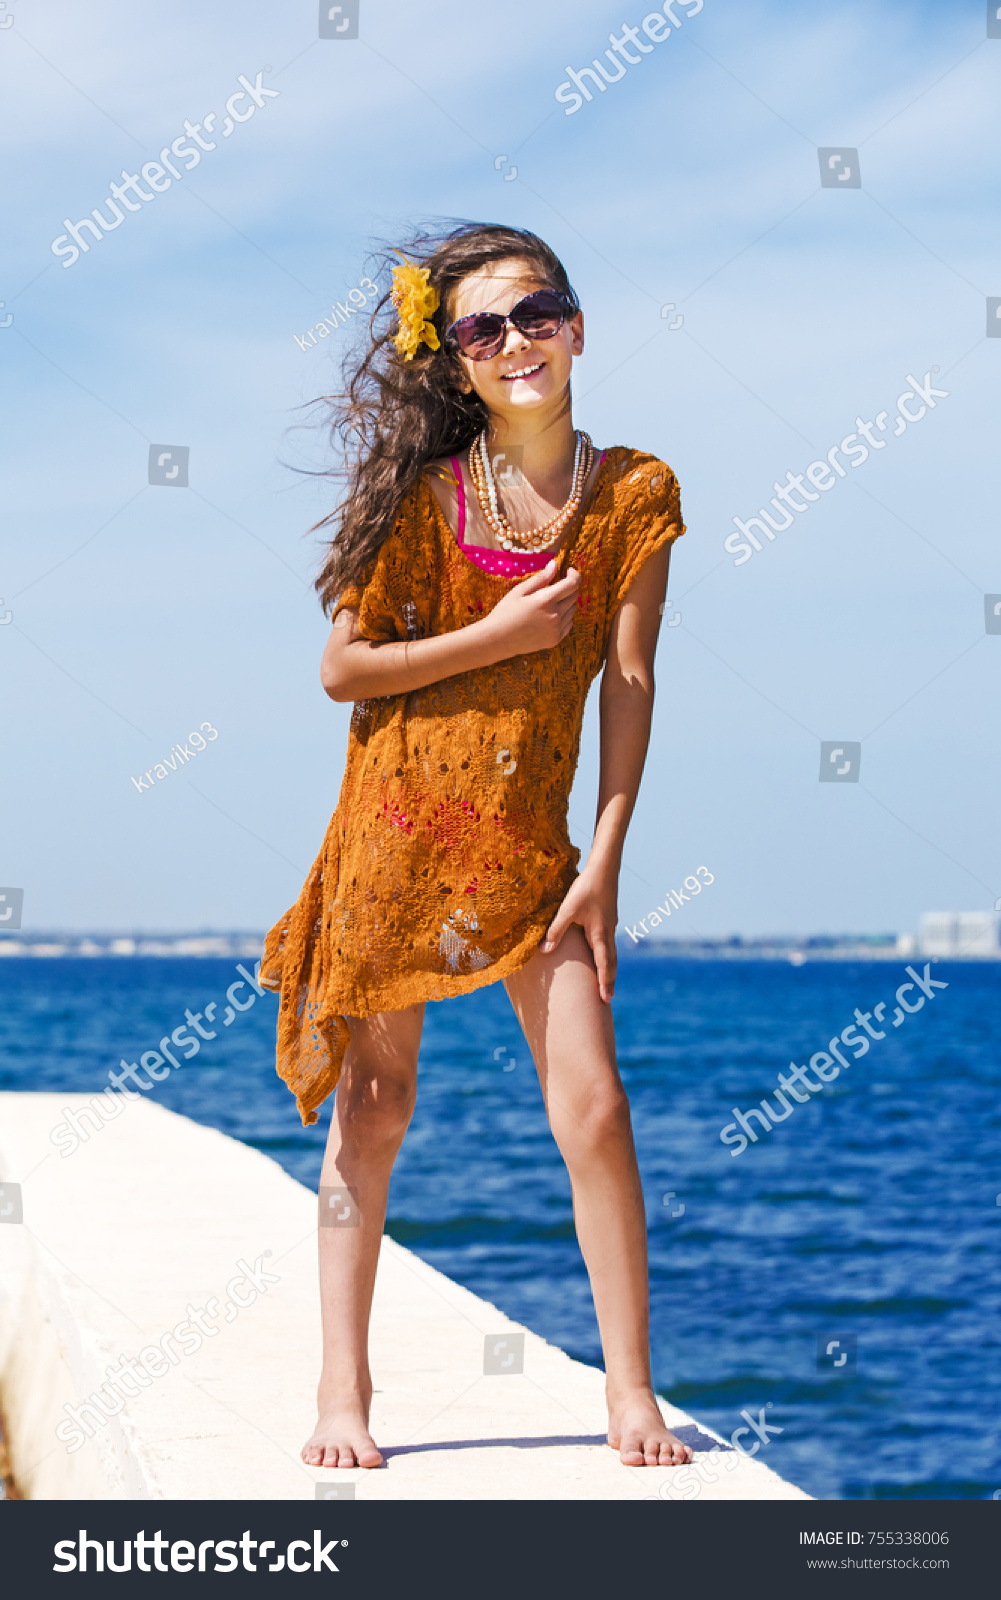 Beach bottomless girl 